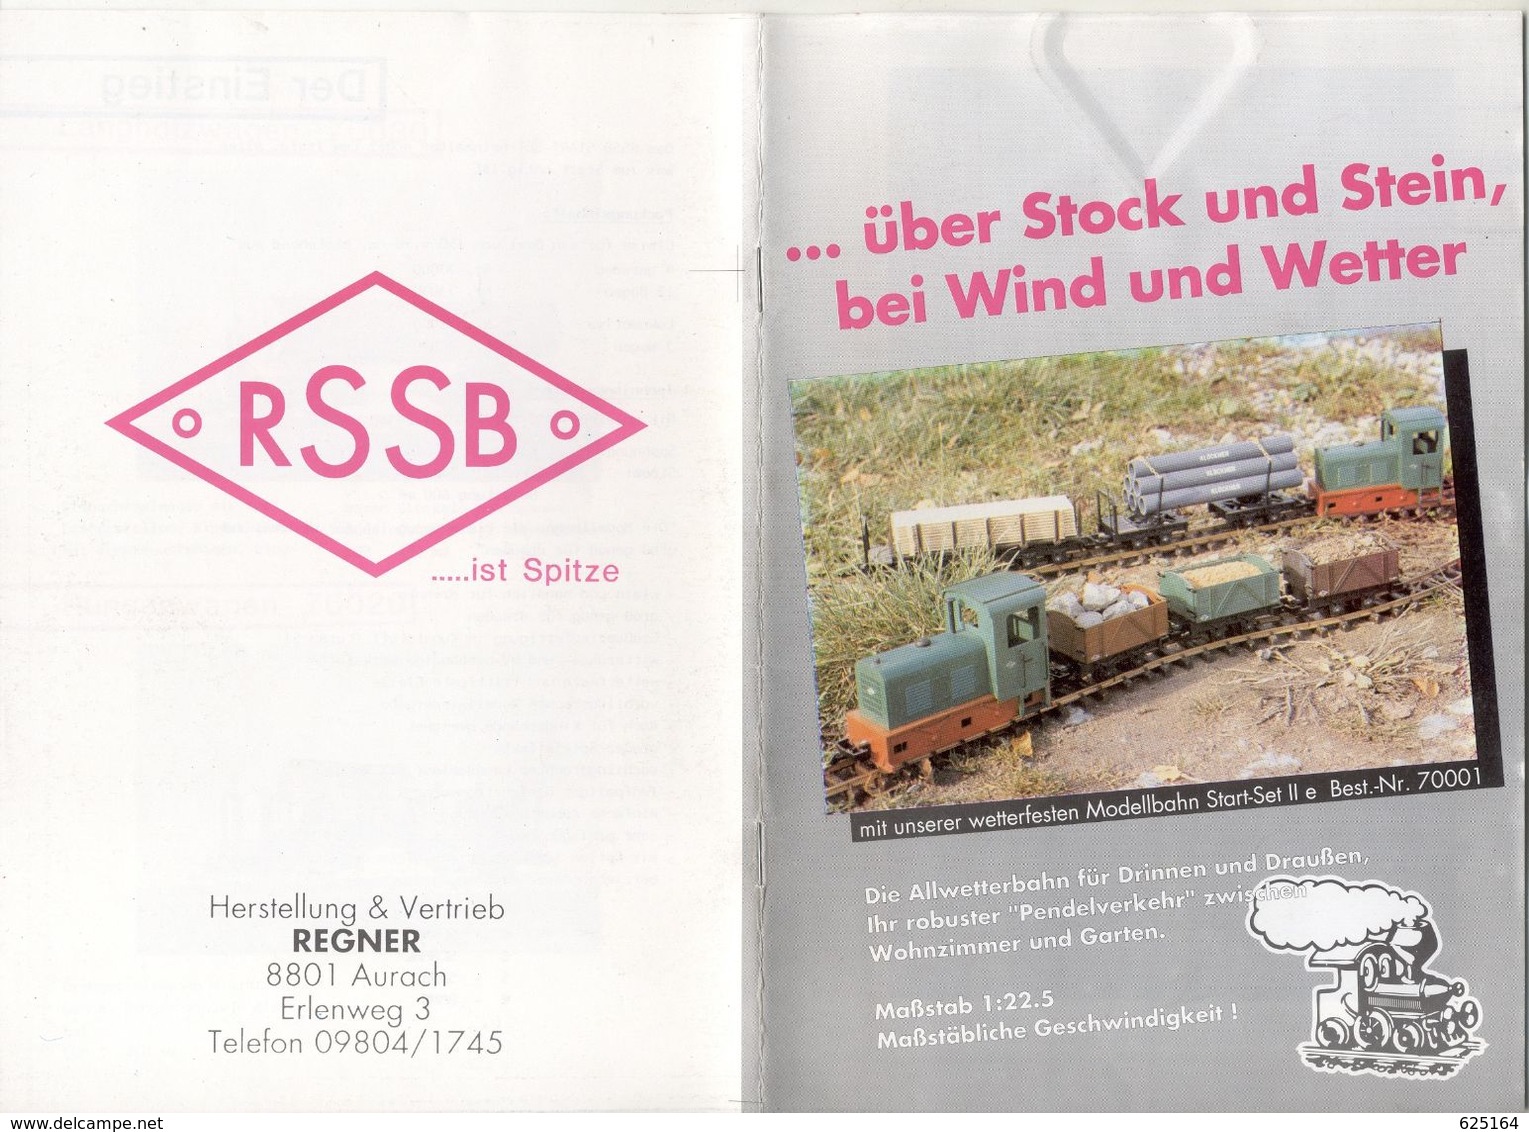 Catalogue REGNER 1990S RSSB Schmal Spur Bahn Baugröße IIe 1:22,5 Spur 30mm - Deutsch